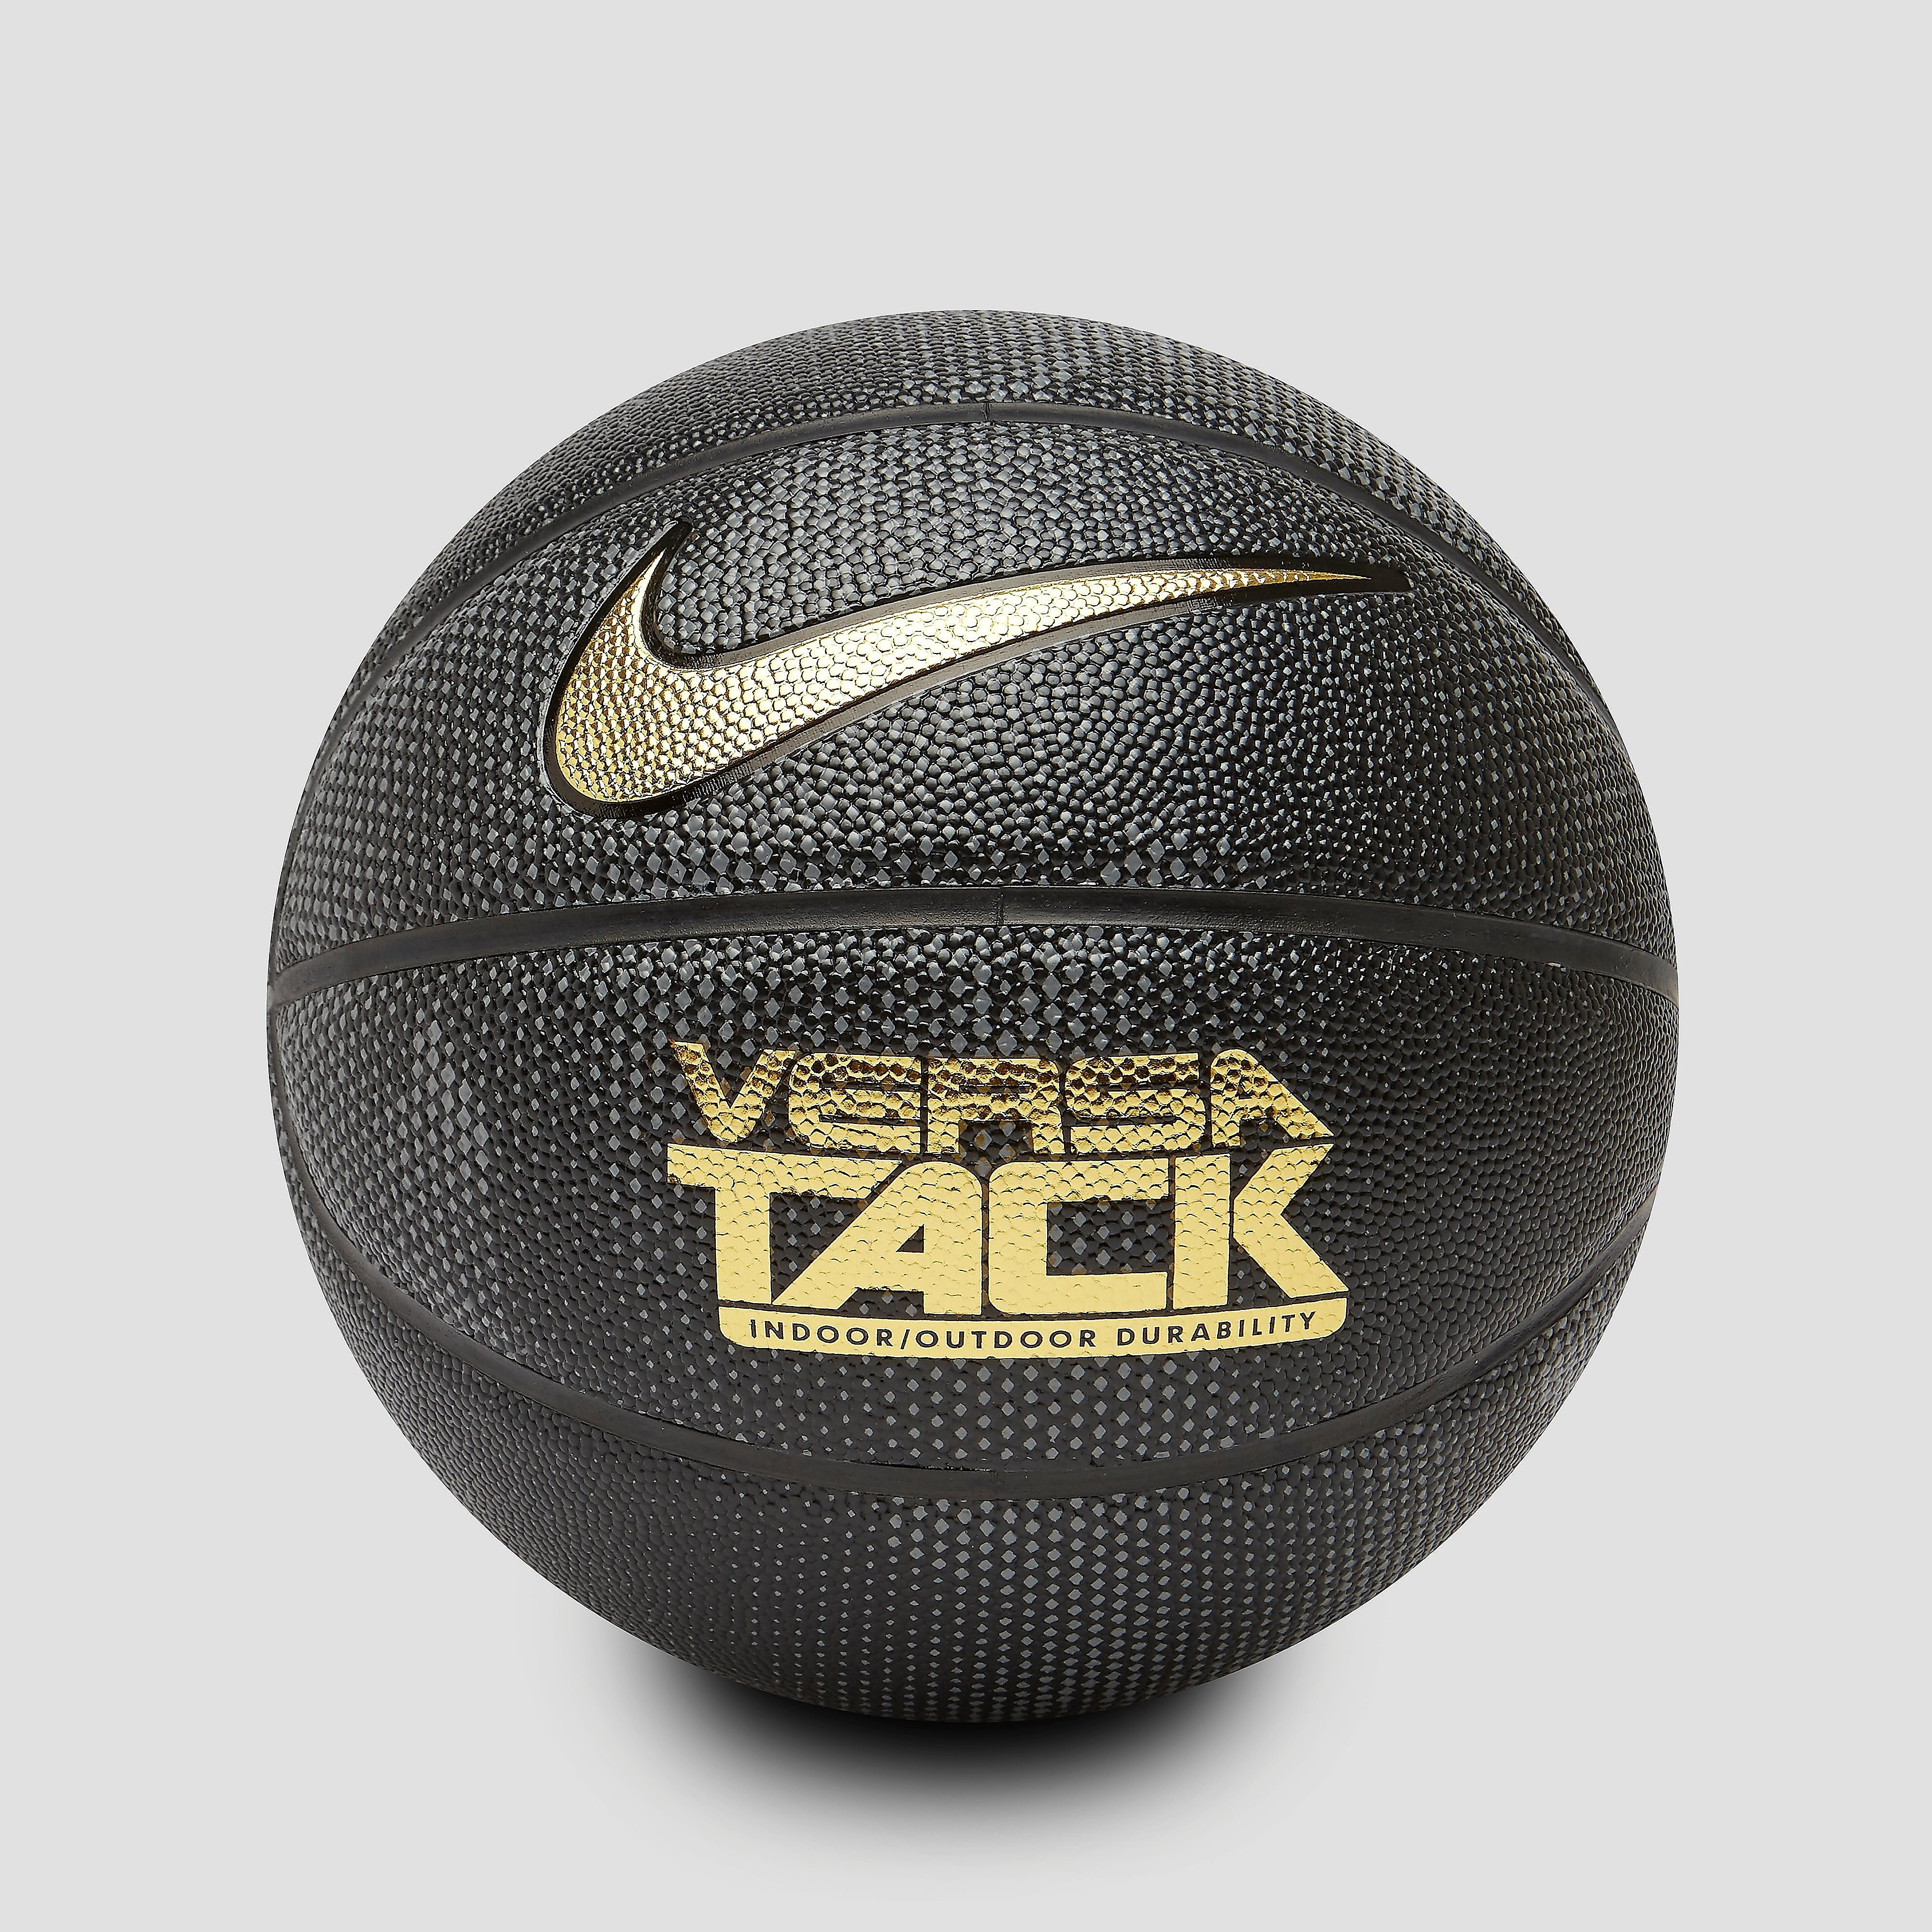 Nike versa tack size 7 basketbal zwart/goud